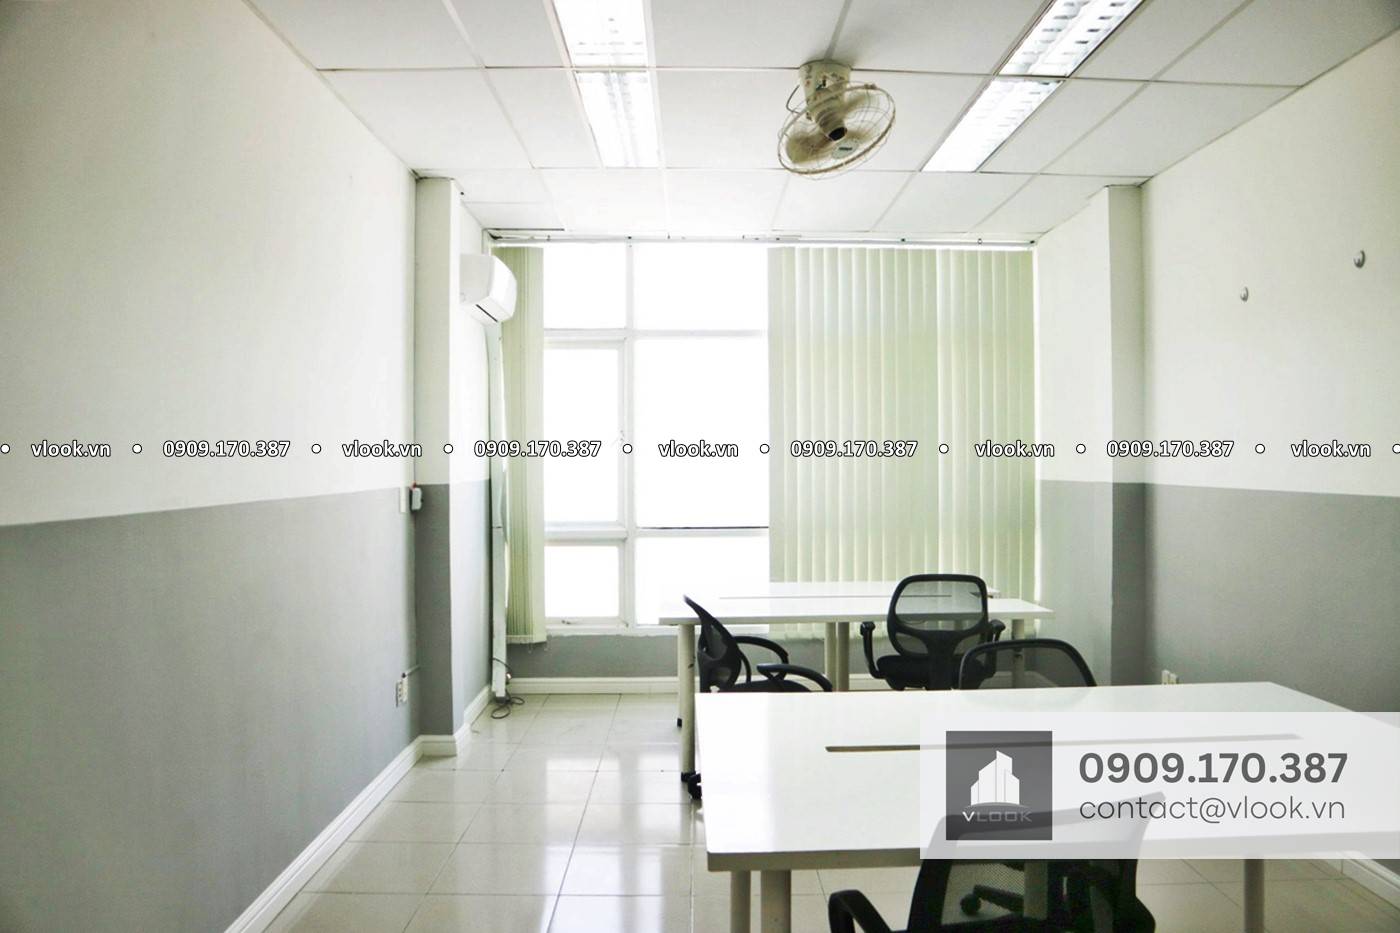 Cao ốc văn phòng cho thuê Tòa nhà One Touch, 42/34 Hoàng Diệu, Phường 13, Quận 4, TPHCM - vlook.vn